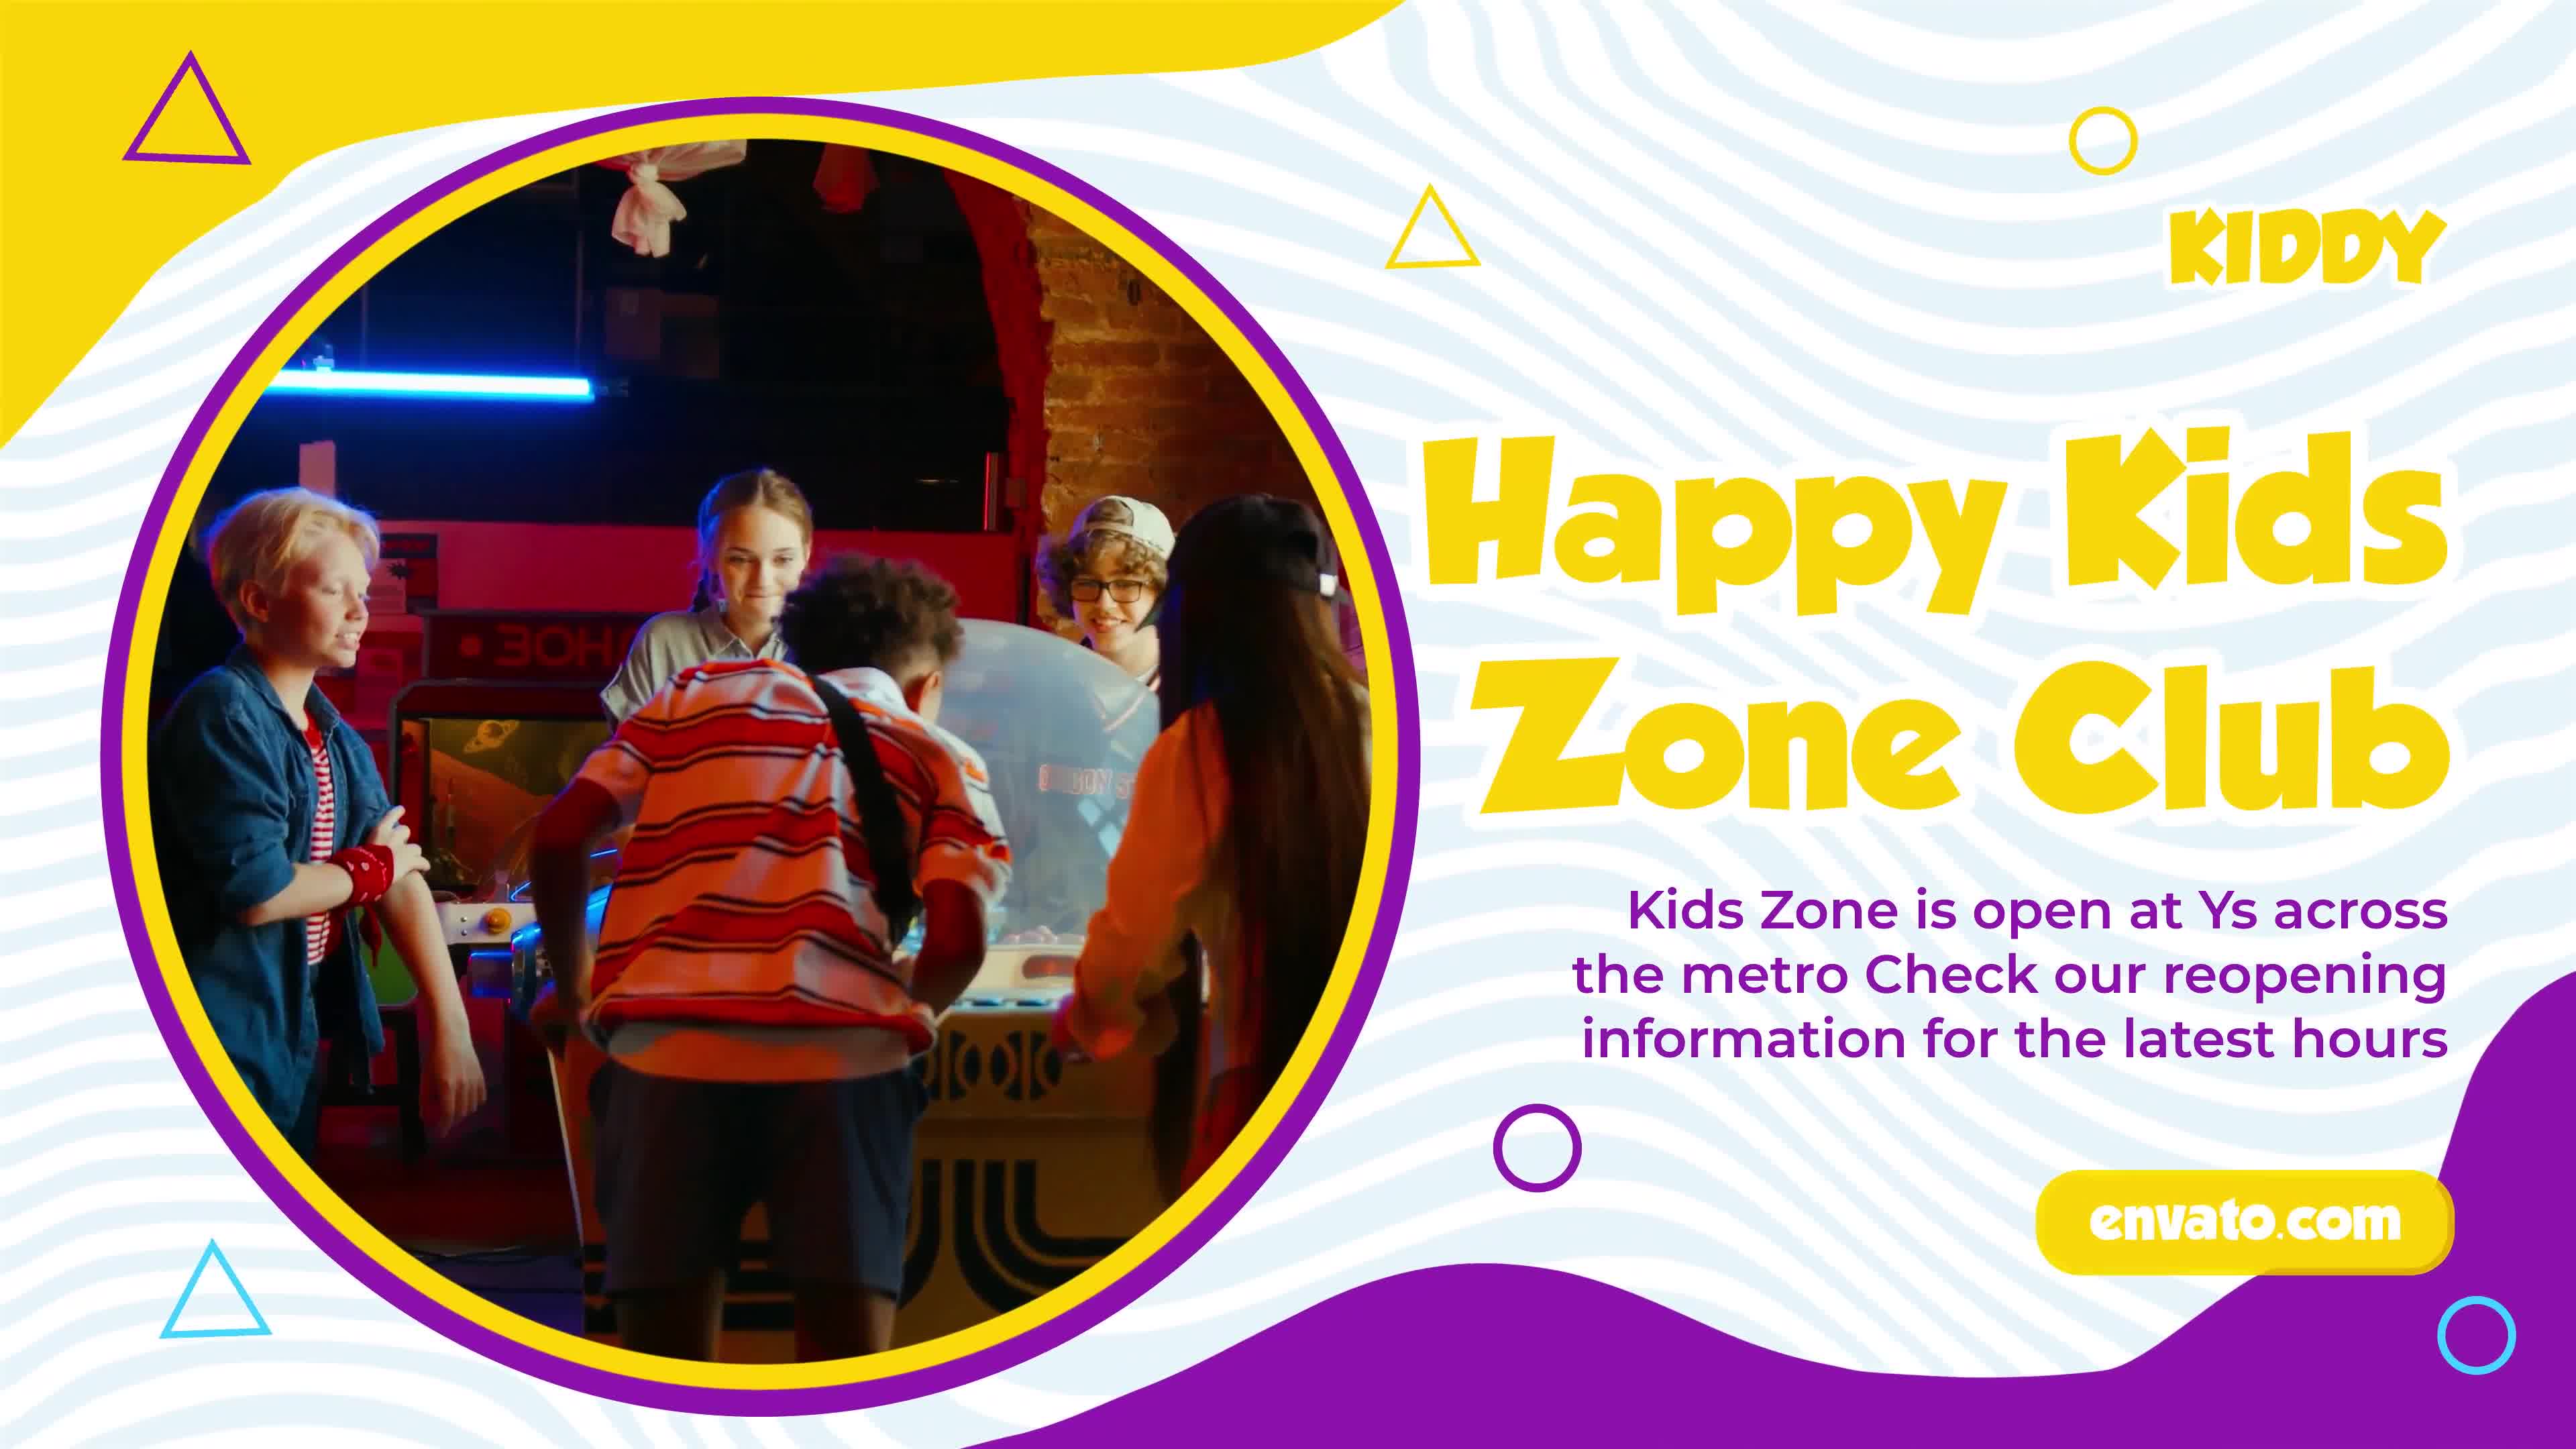 Kids Zone Slideshow | MOGRT Videohive 33124488 Premiere Pro Image 8